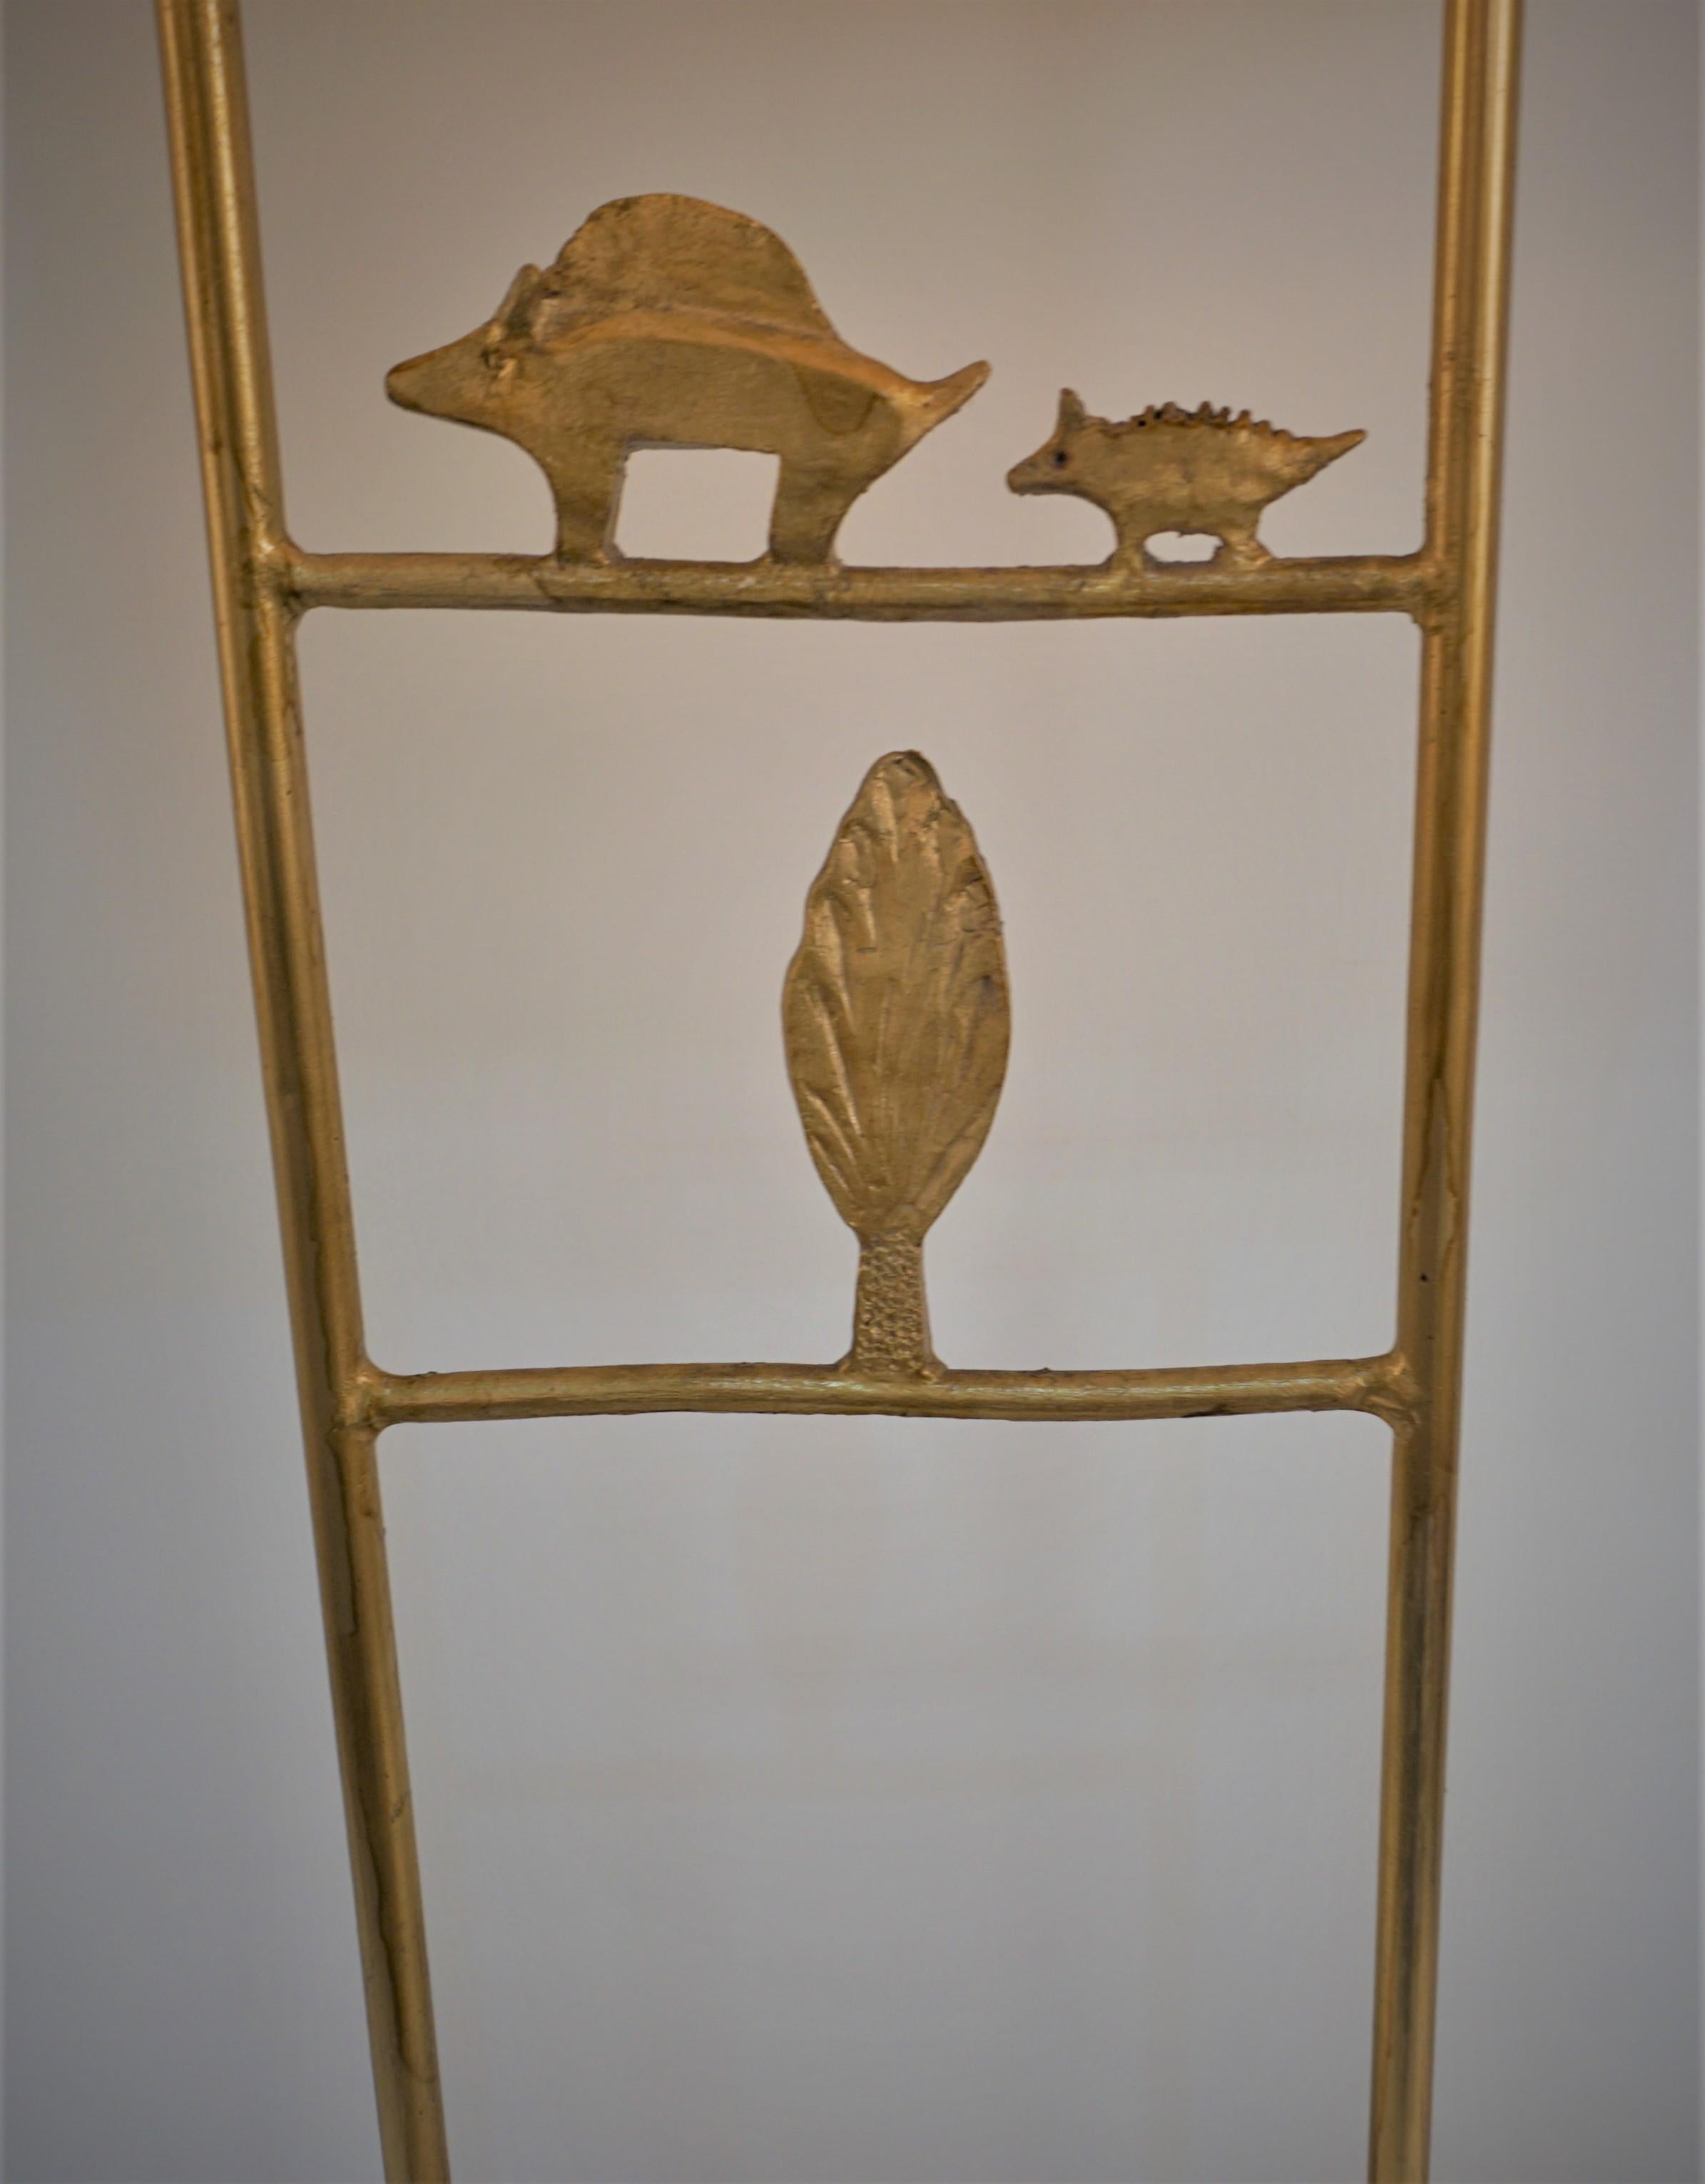 Magnifique lampe de table à abat-jour oblong en soie, en métal doré, des années 1990, conçue par l'artiste et sculpteur moderne Pierre Casenove pour la société française Fondica. 
Recâblage professionnel.
Les mesures comprennent l'abat-jour.